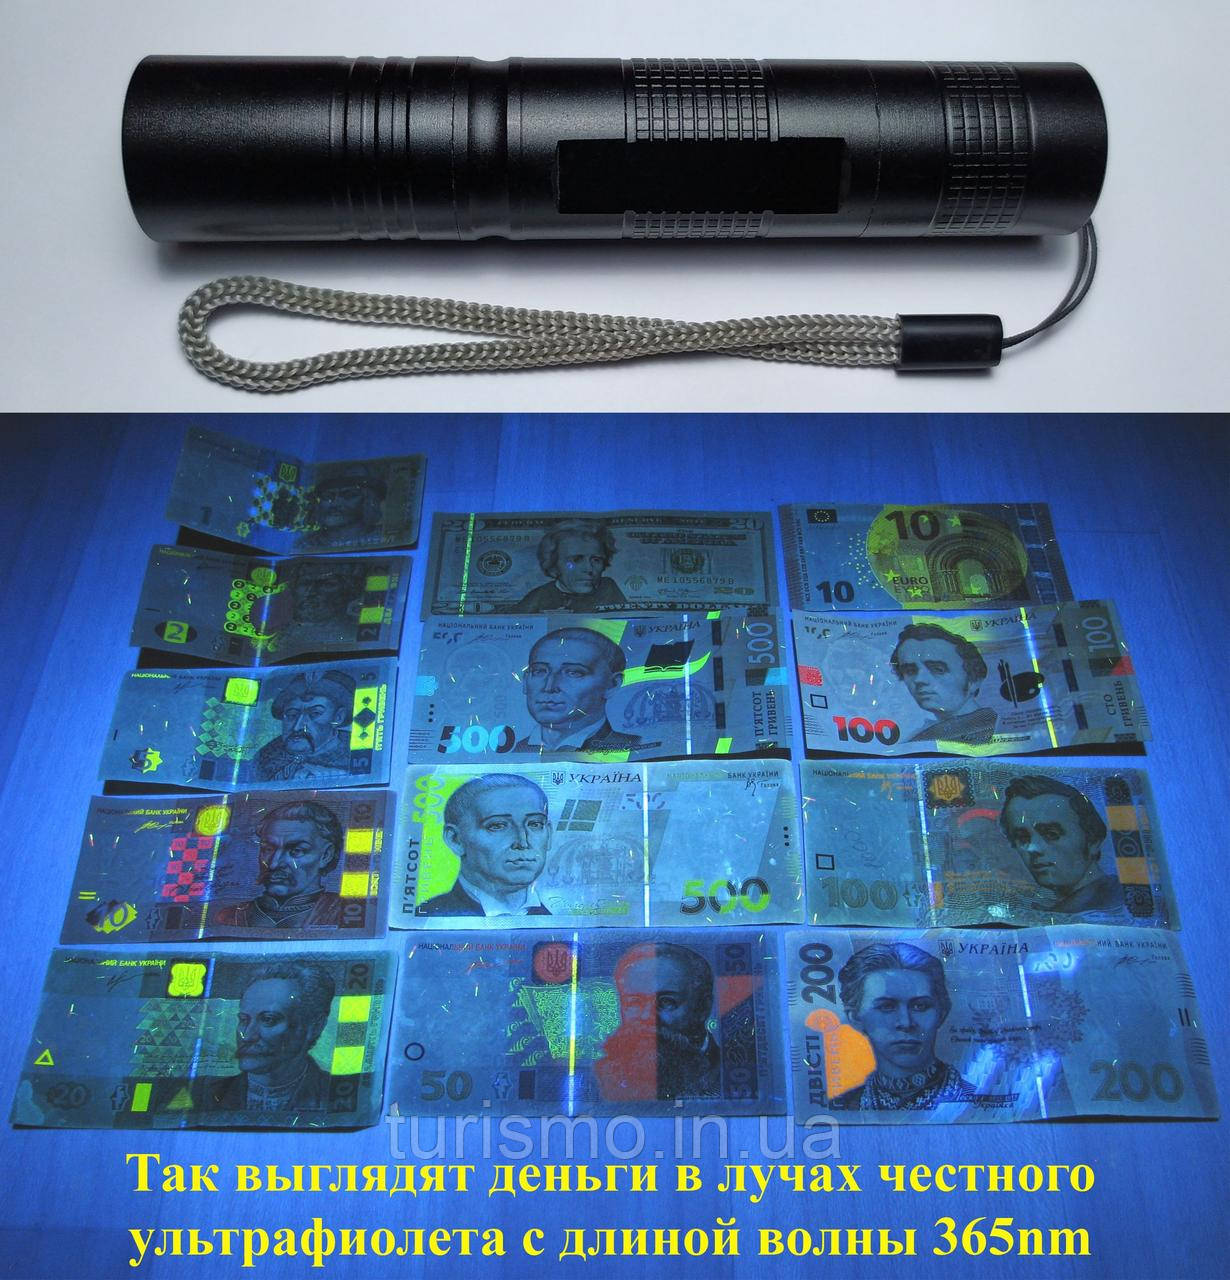 Ультрафіолетовий кишеньковий ліхтарик UV 365nm детектор валют зі склом Вуда, від акумулятора 18650